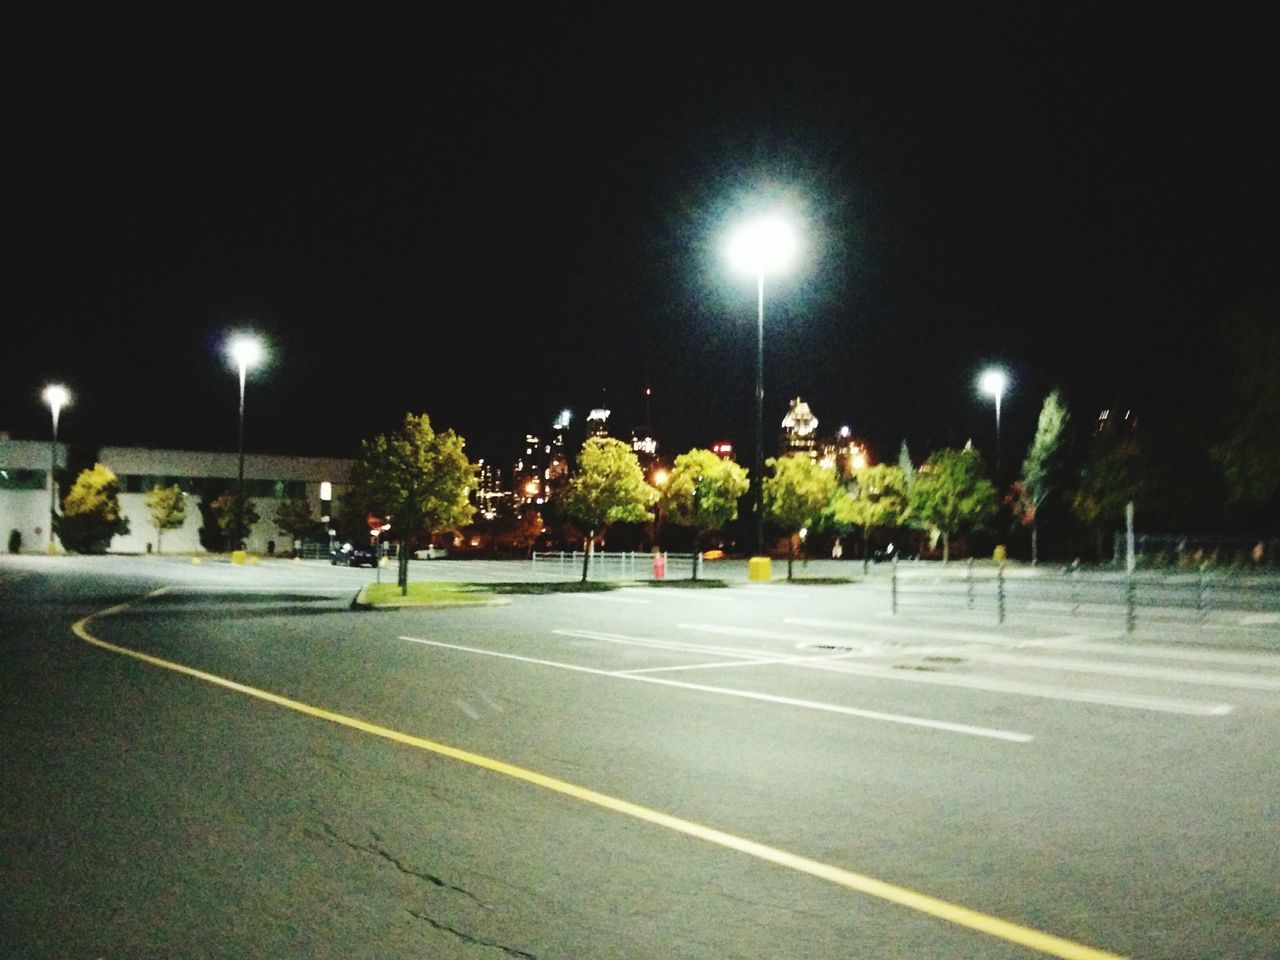 night, street light, illuminated, tree, lighting equipment, no people, sky, outdoors